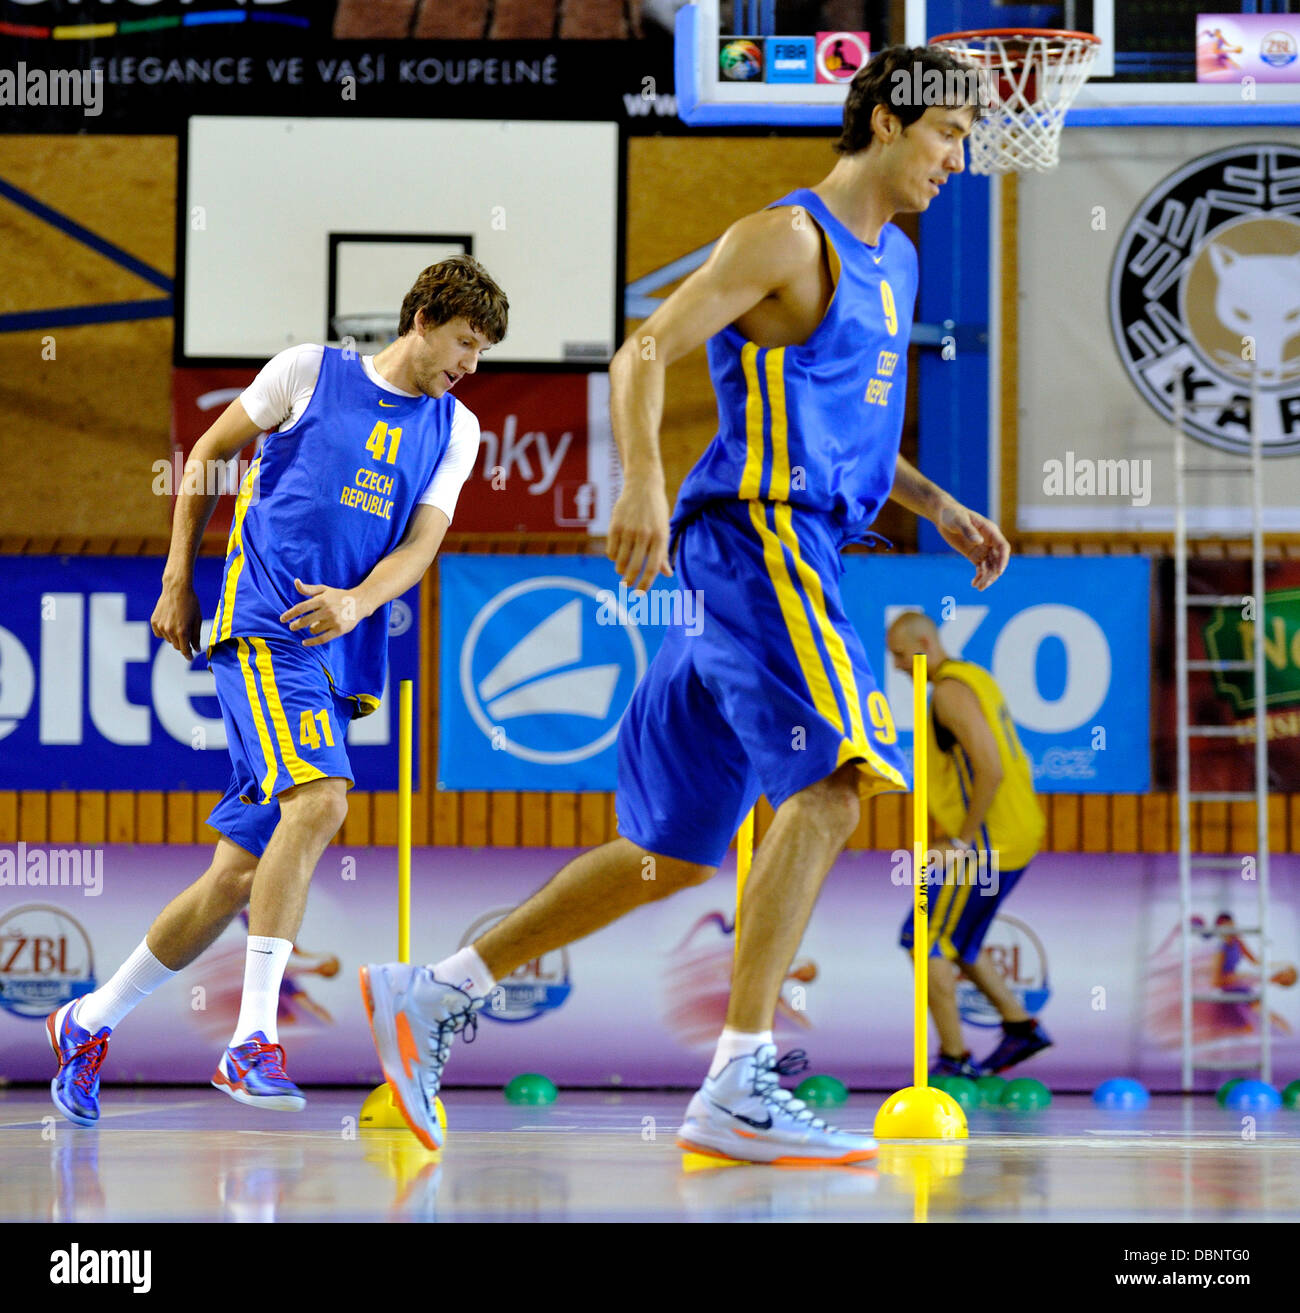 L'équipe nationale de basket-ball tchèque représentée au cours de la formation pour les Championnats d'Europe à Trutnov, République tchèque le 2 août 2013. De gauche Jan Vesely et Jiri Welsch. (CTK Photo/David Tanecek) Banque D'Images